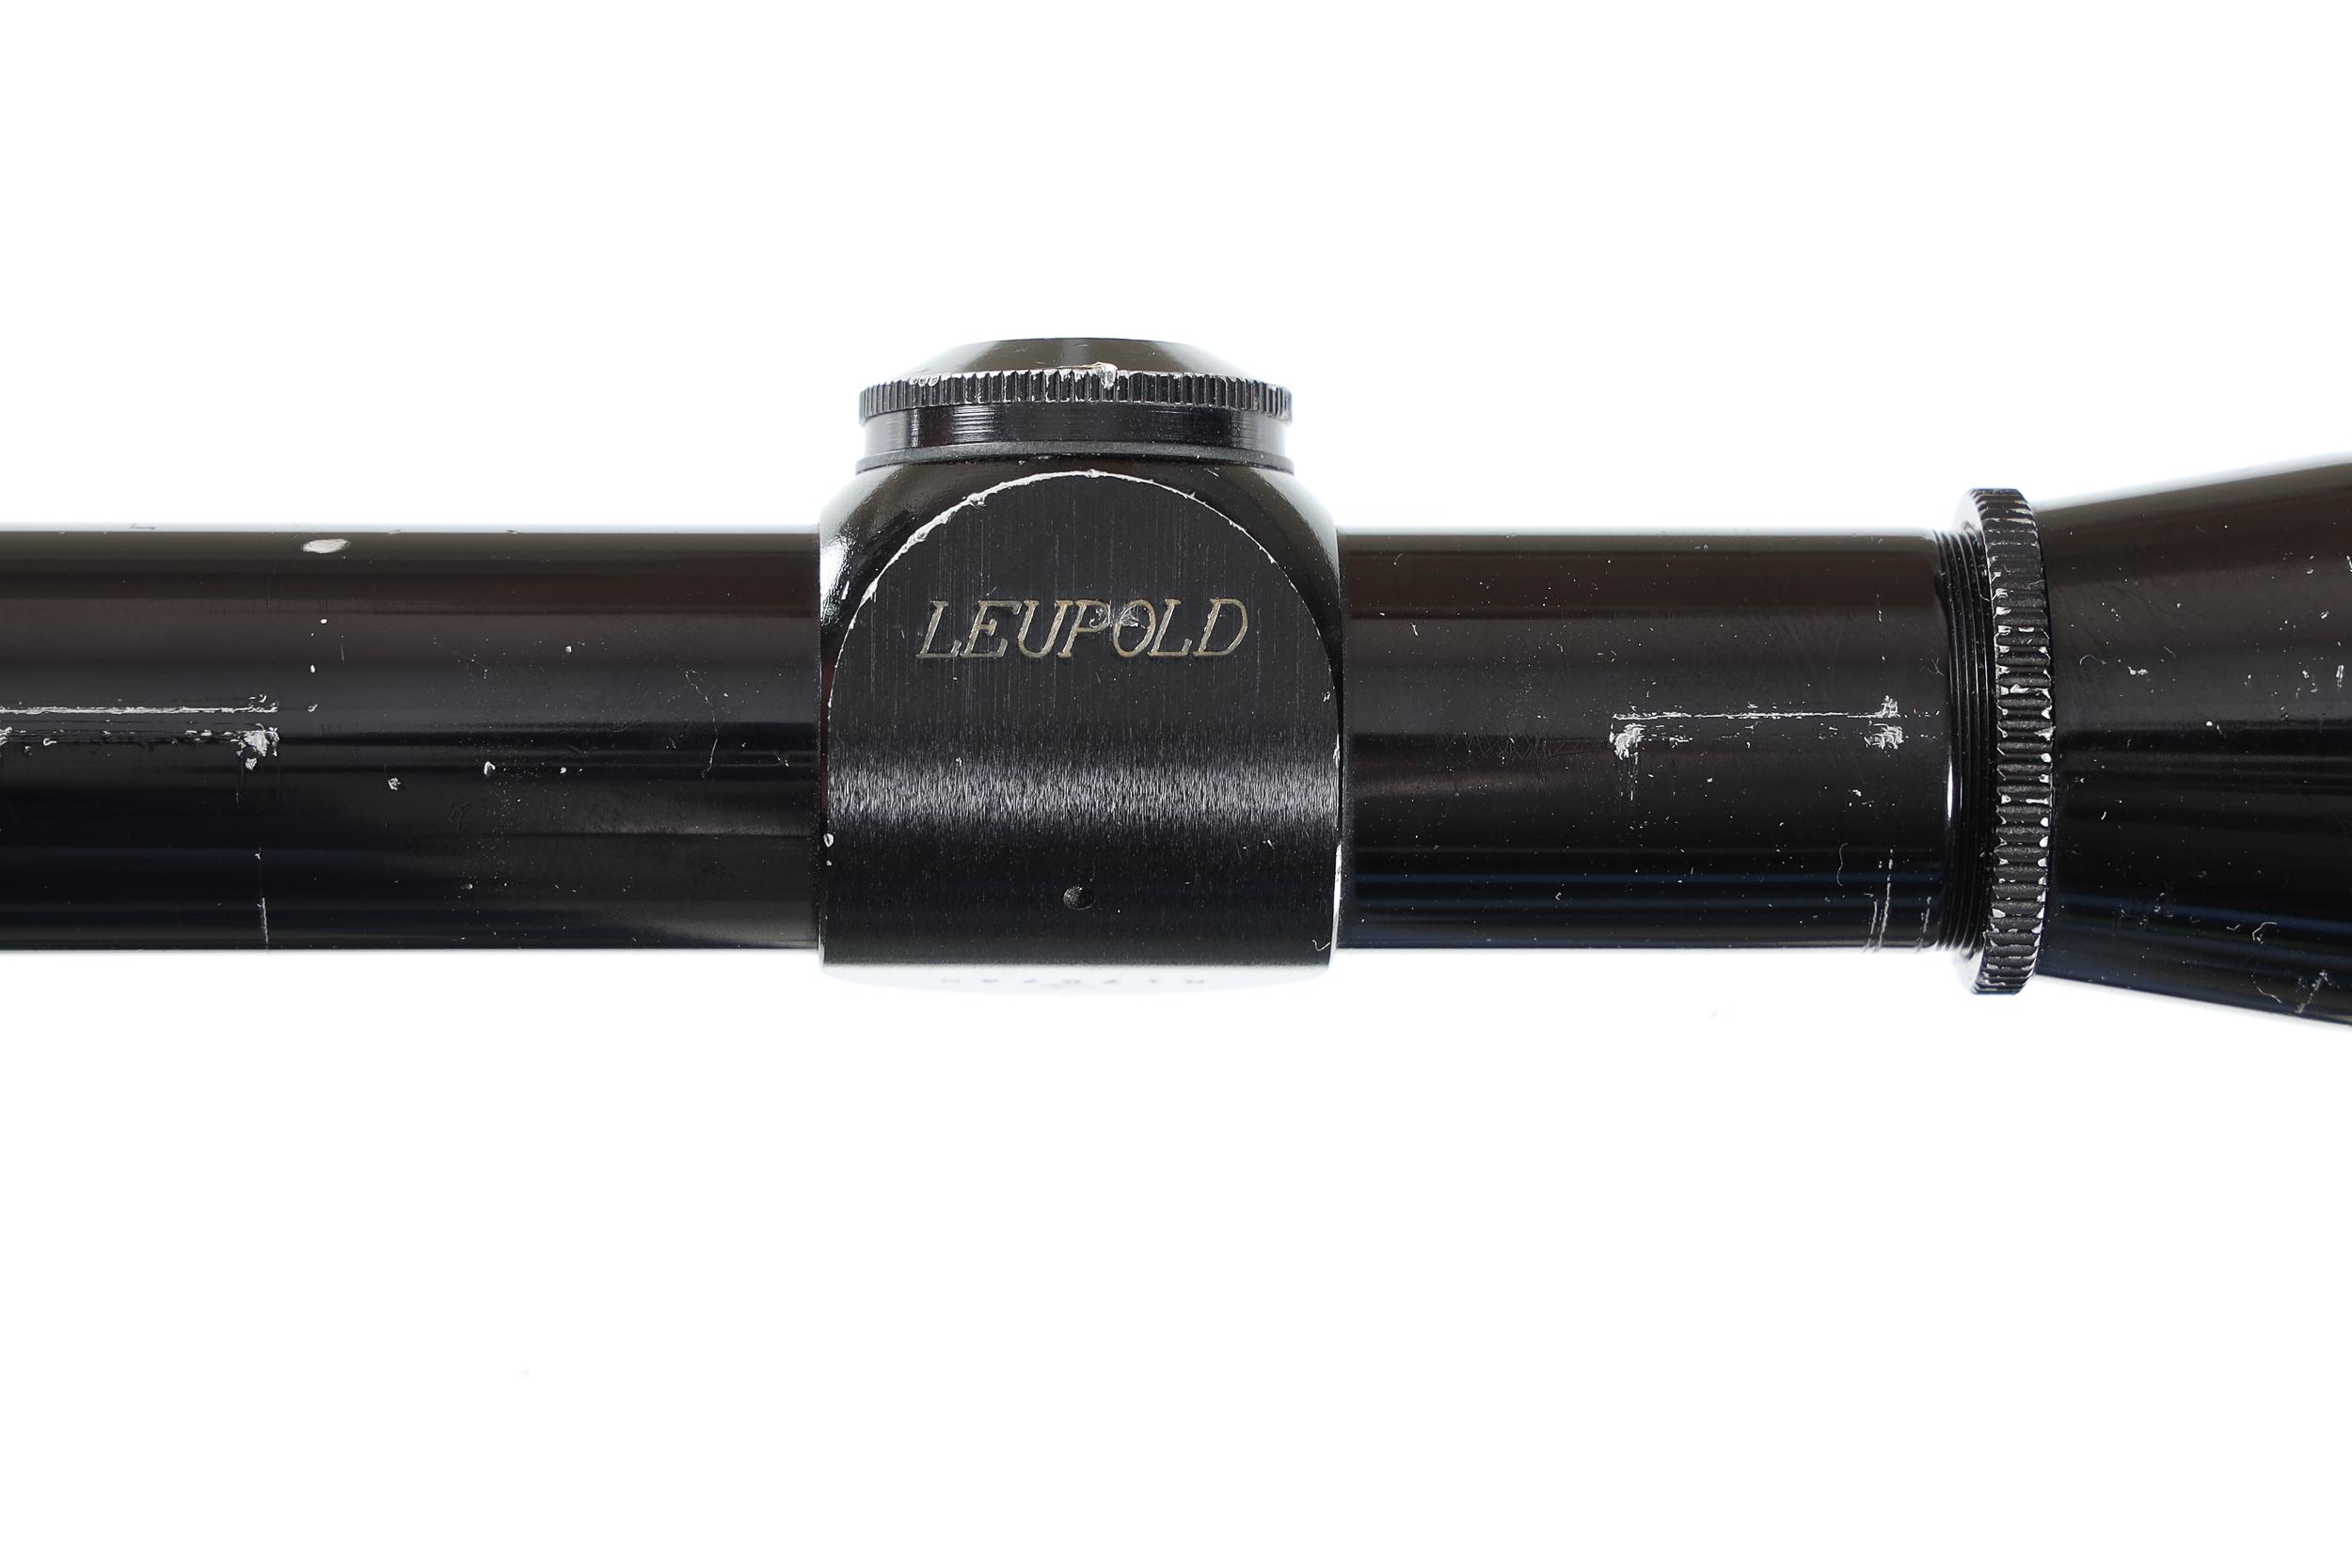 Leupold M8-2x Scope